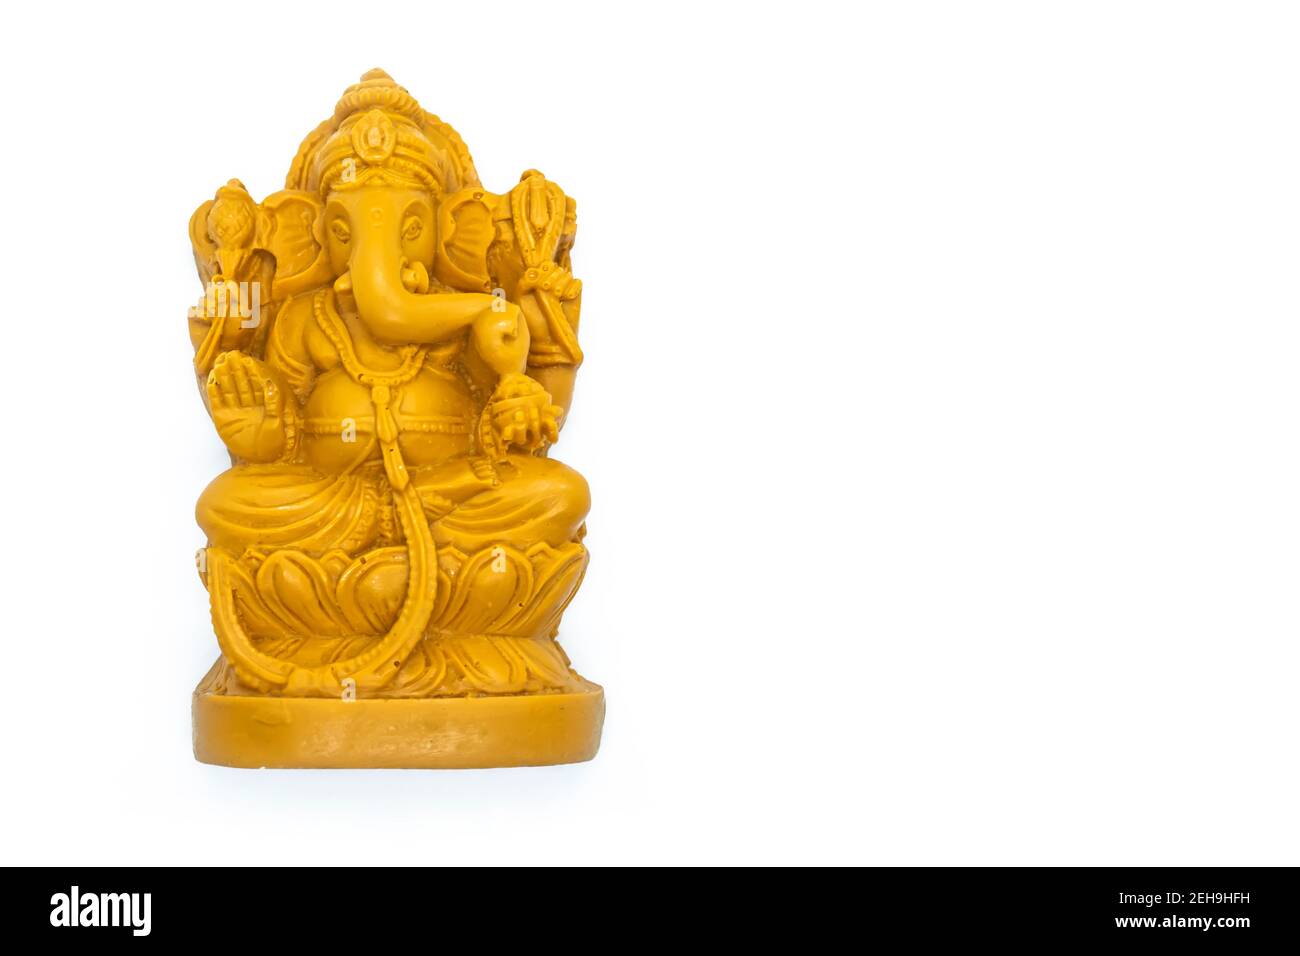 Ganesha statue of Hindu god Ganesha on white backgrounds Stock Photo ...